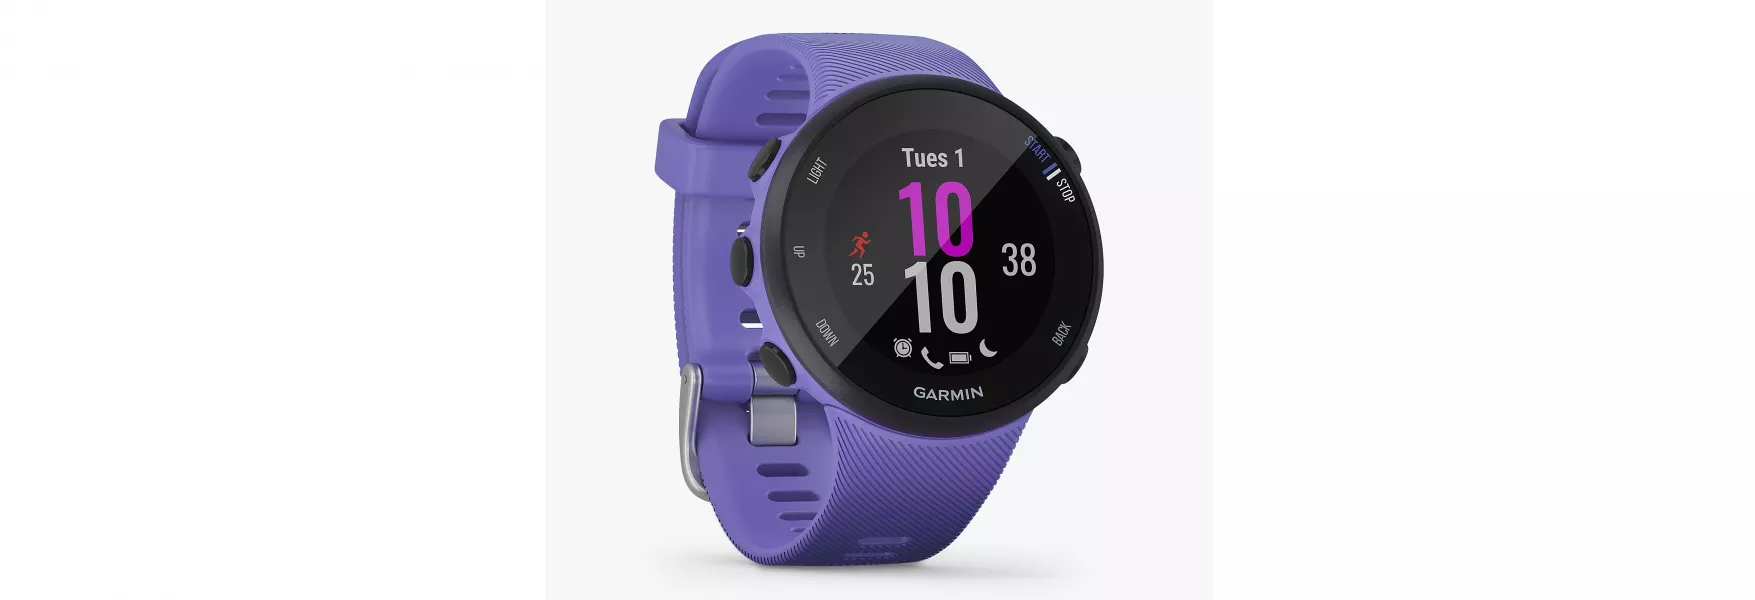 Garmin watch with purple strap